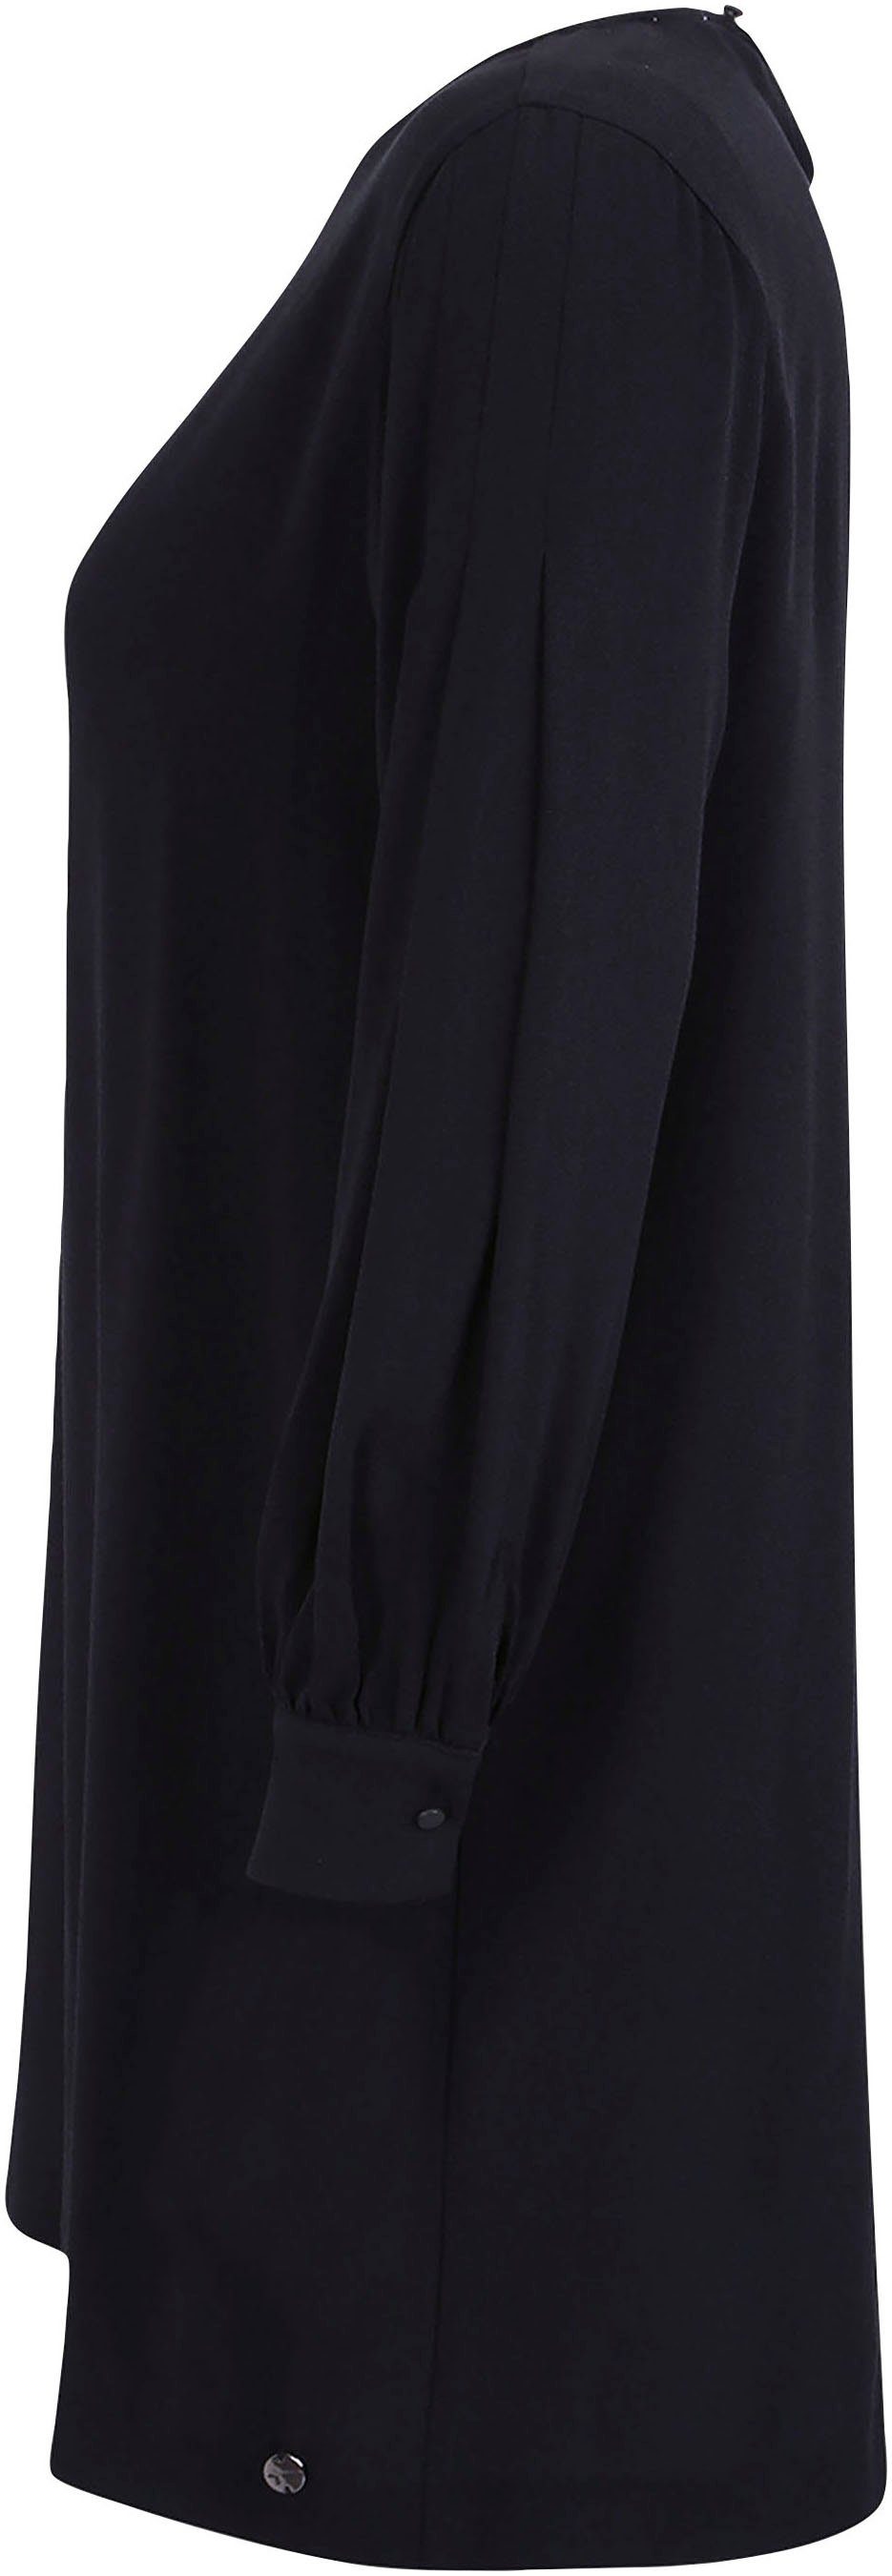 Tamaris A-Linien-Kleid KOLLEKTION Rundhalsausschnitt- black NEUE mit beauty